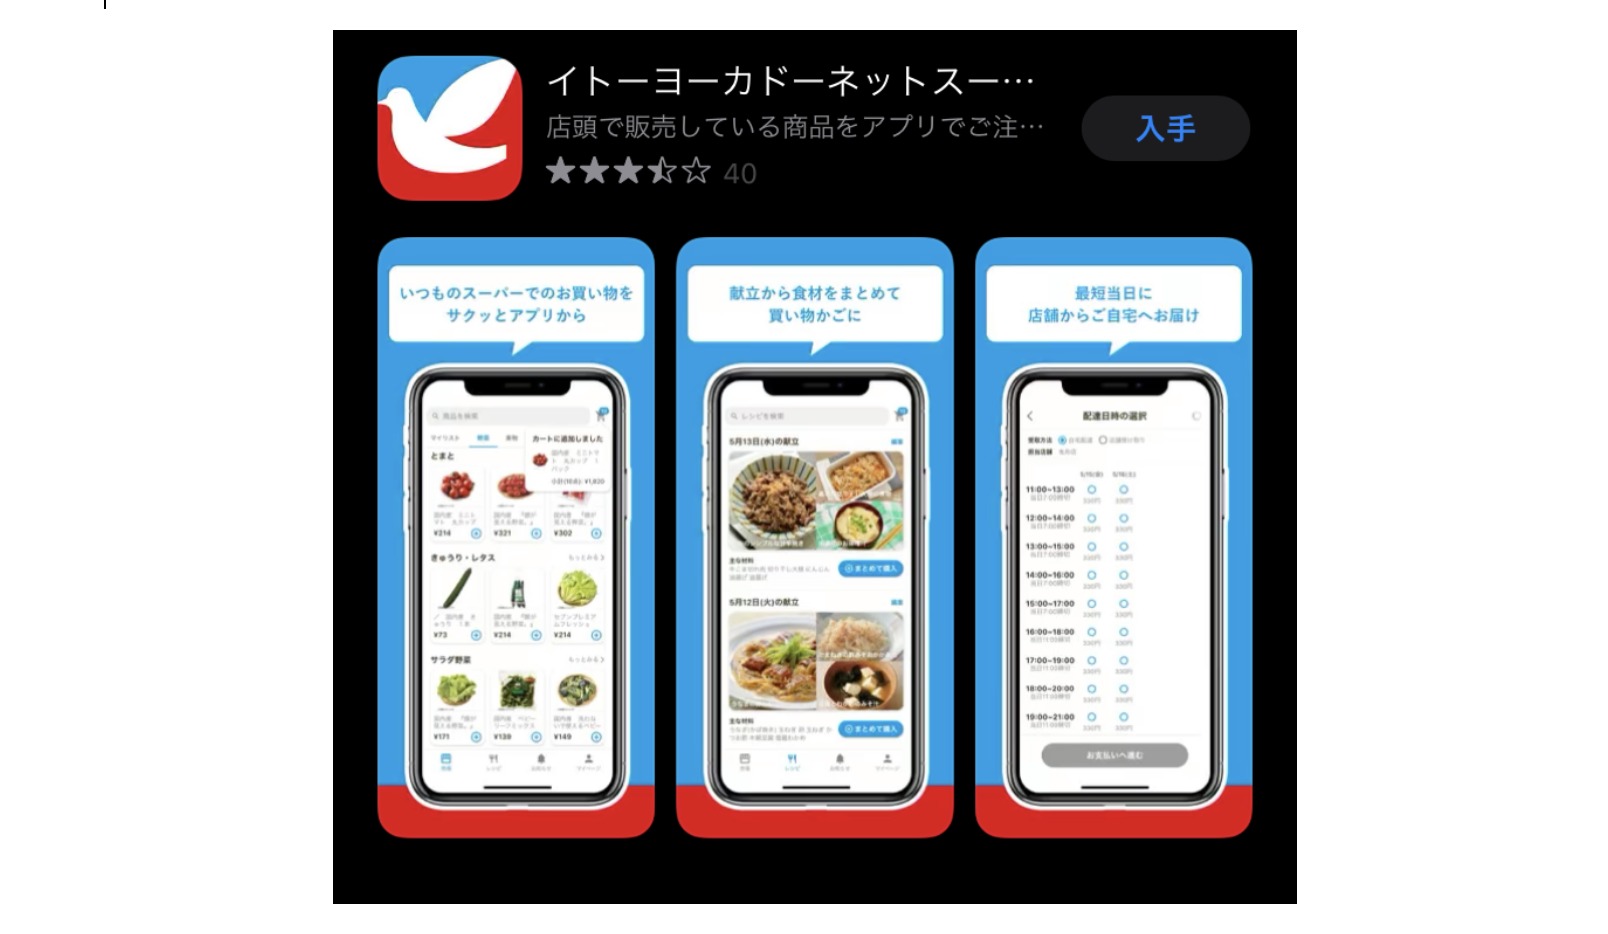 イトーヨーカドー「ネットスーパー アプリ」は食品小売のDX化を進めるか